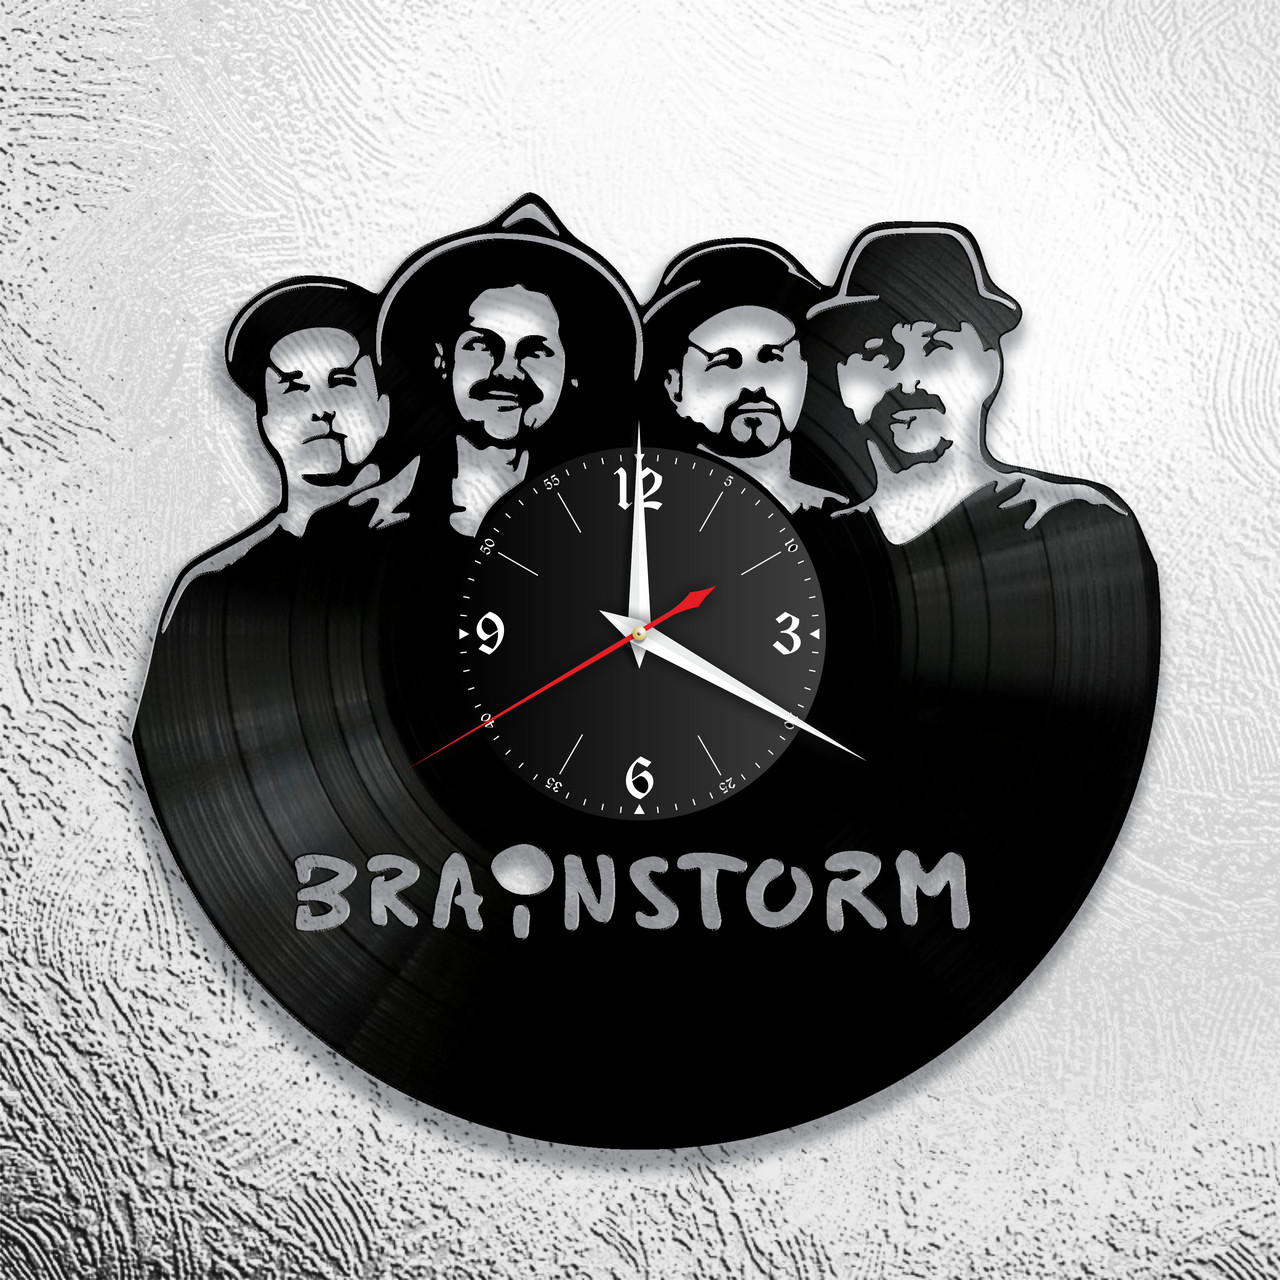 Оригинальные часы из виниловых пластинок "Brainstorm" версия 1